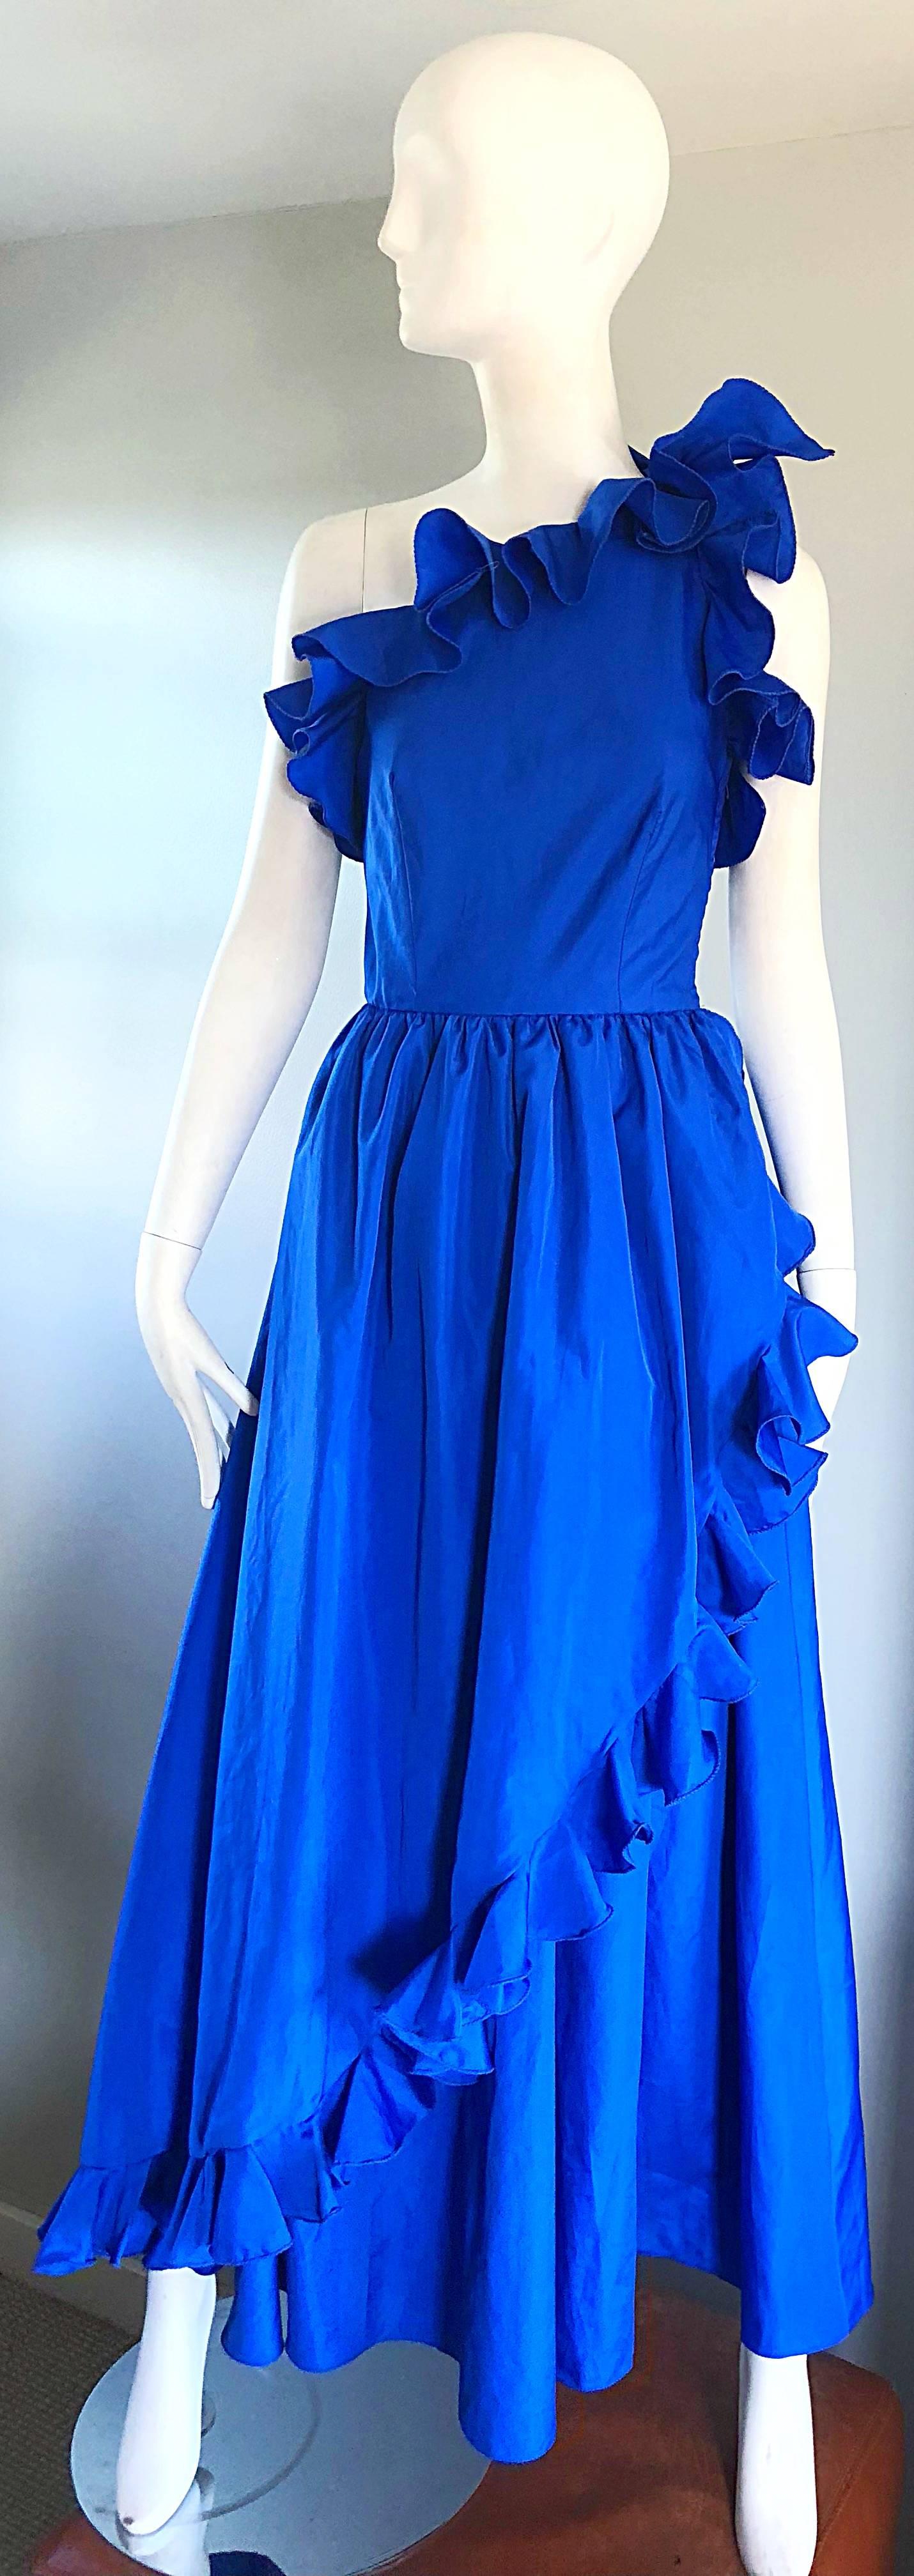 royal blue color gown